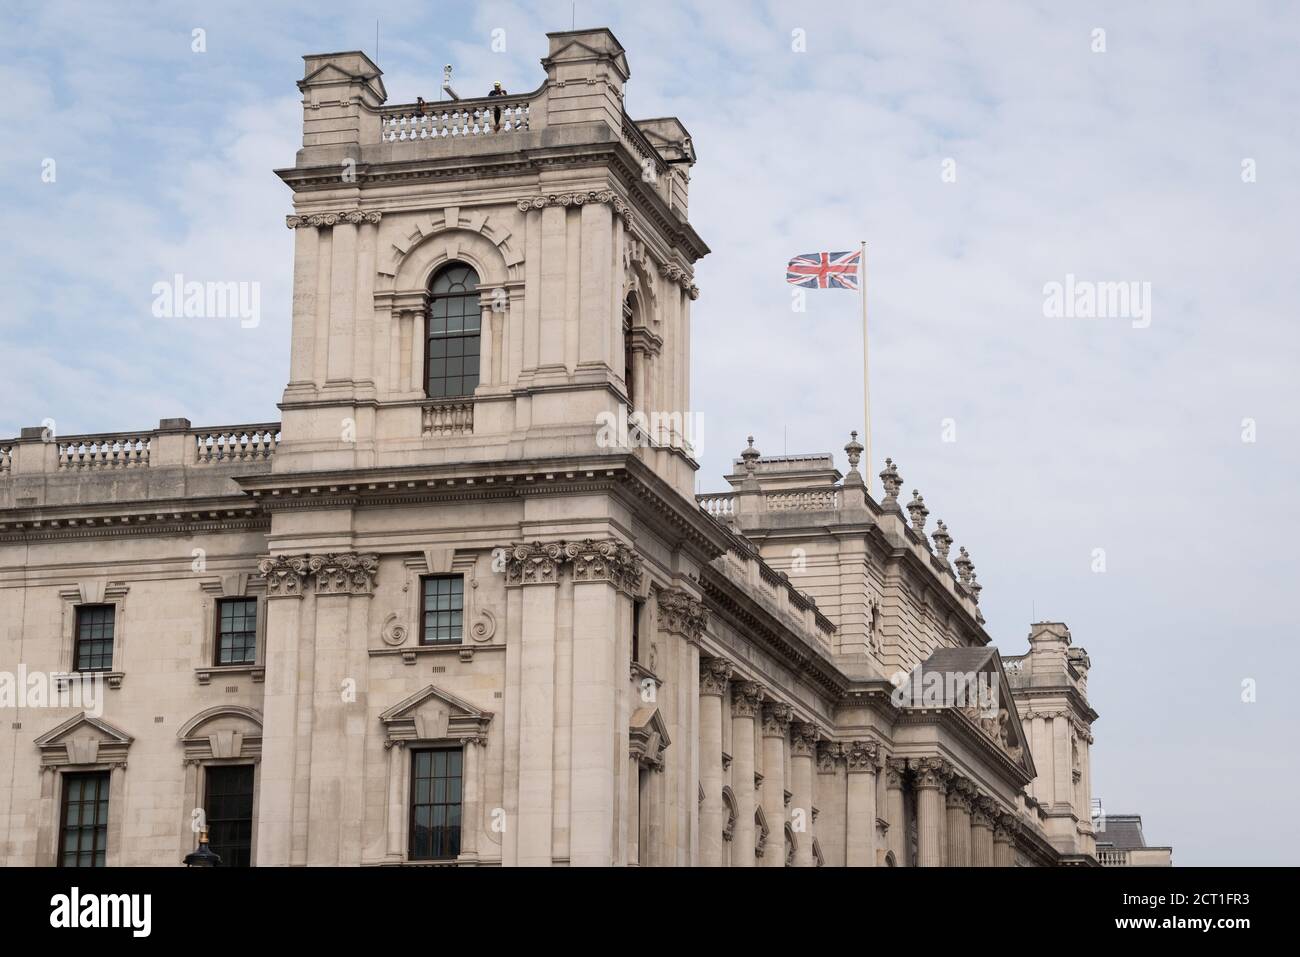 Mentre un ufficiale di polizia guarda una piccola protesta in Parliament Square, l'Union Jack vola sul Tesoro a Whitehall, la sede di molti edifici governativi britannici a Westminster, il 16 settembre 2020, a Londra, Inghilterra. Foto Stock